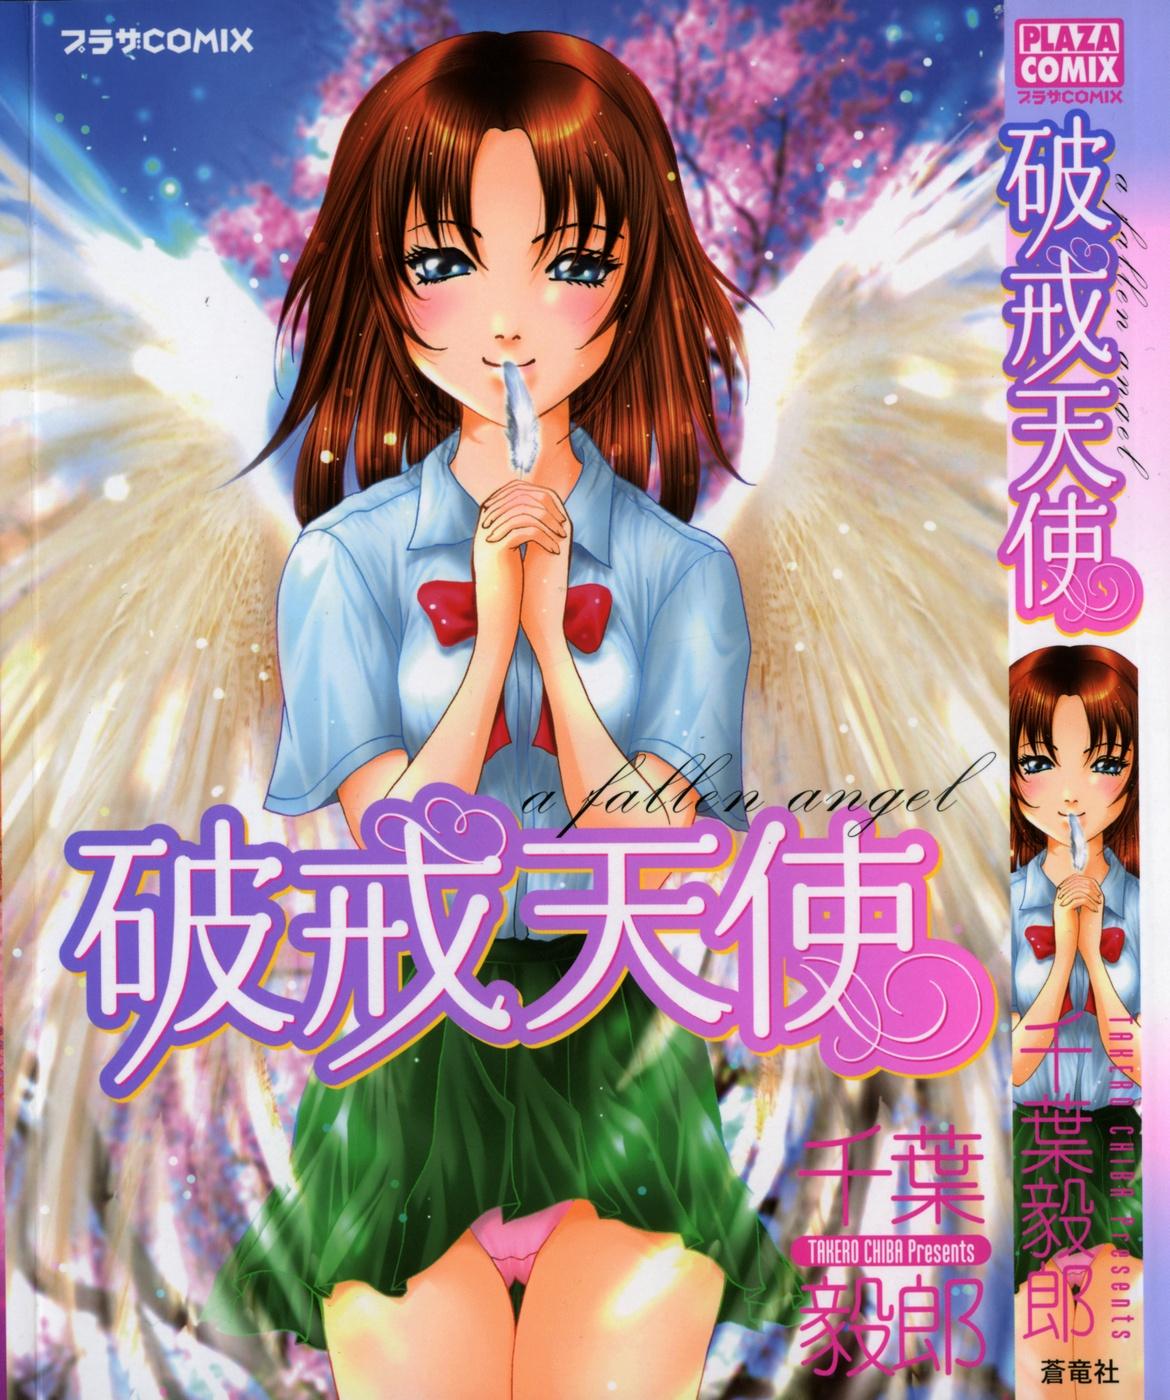 Hakai Tenshi - A Fallen Angel 0